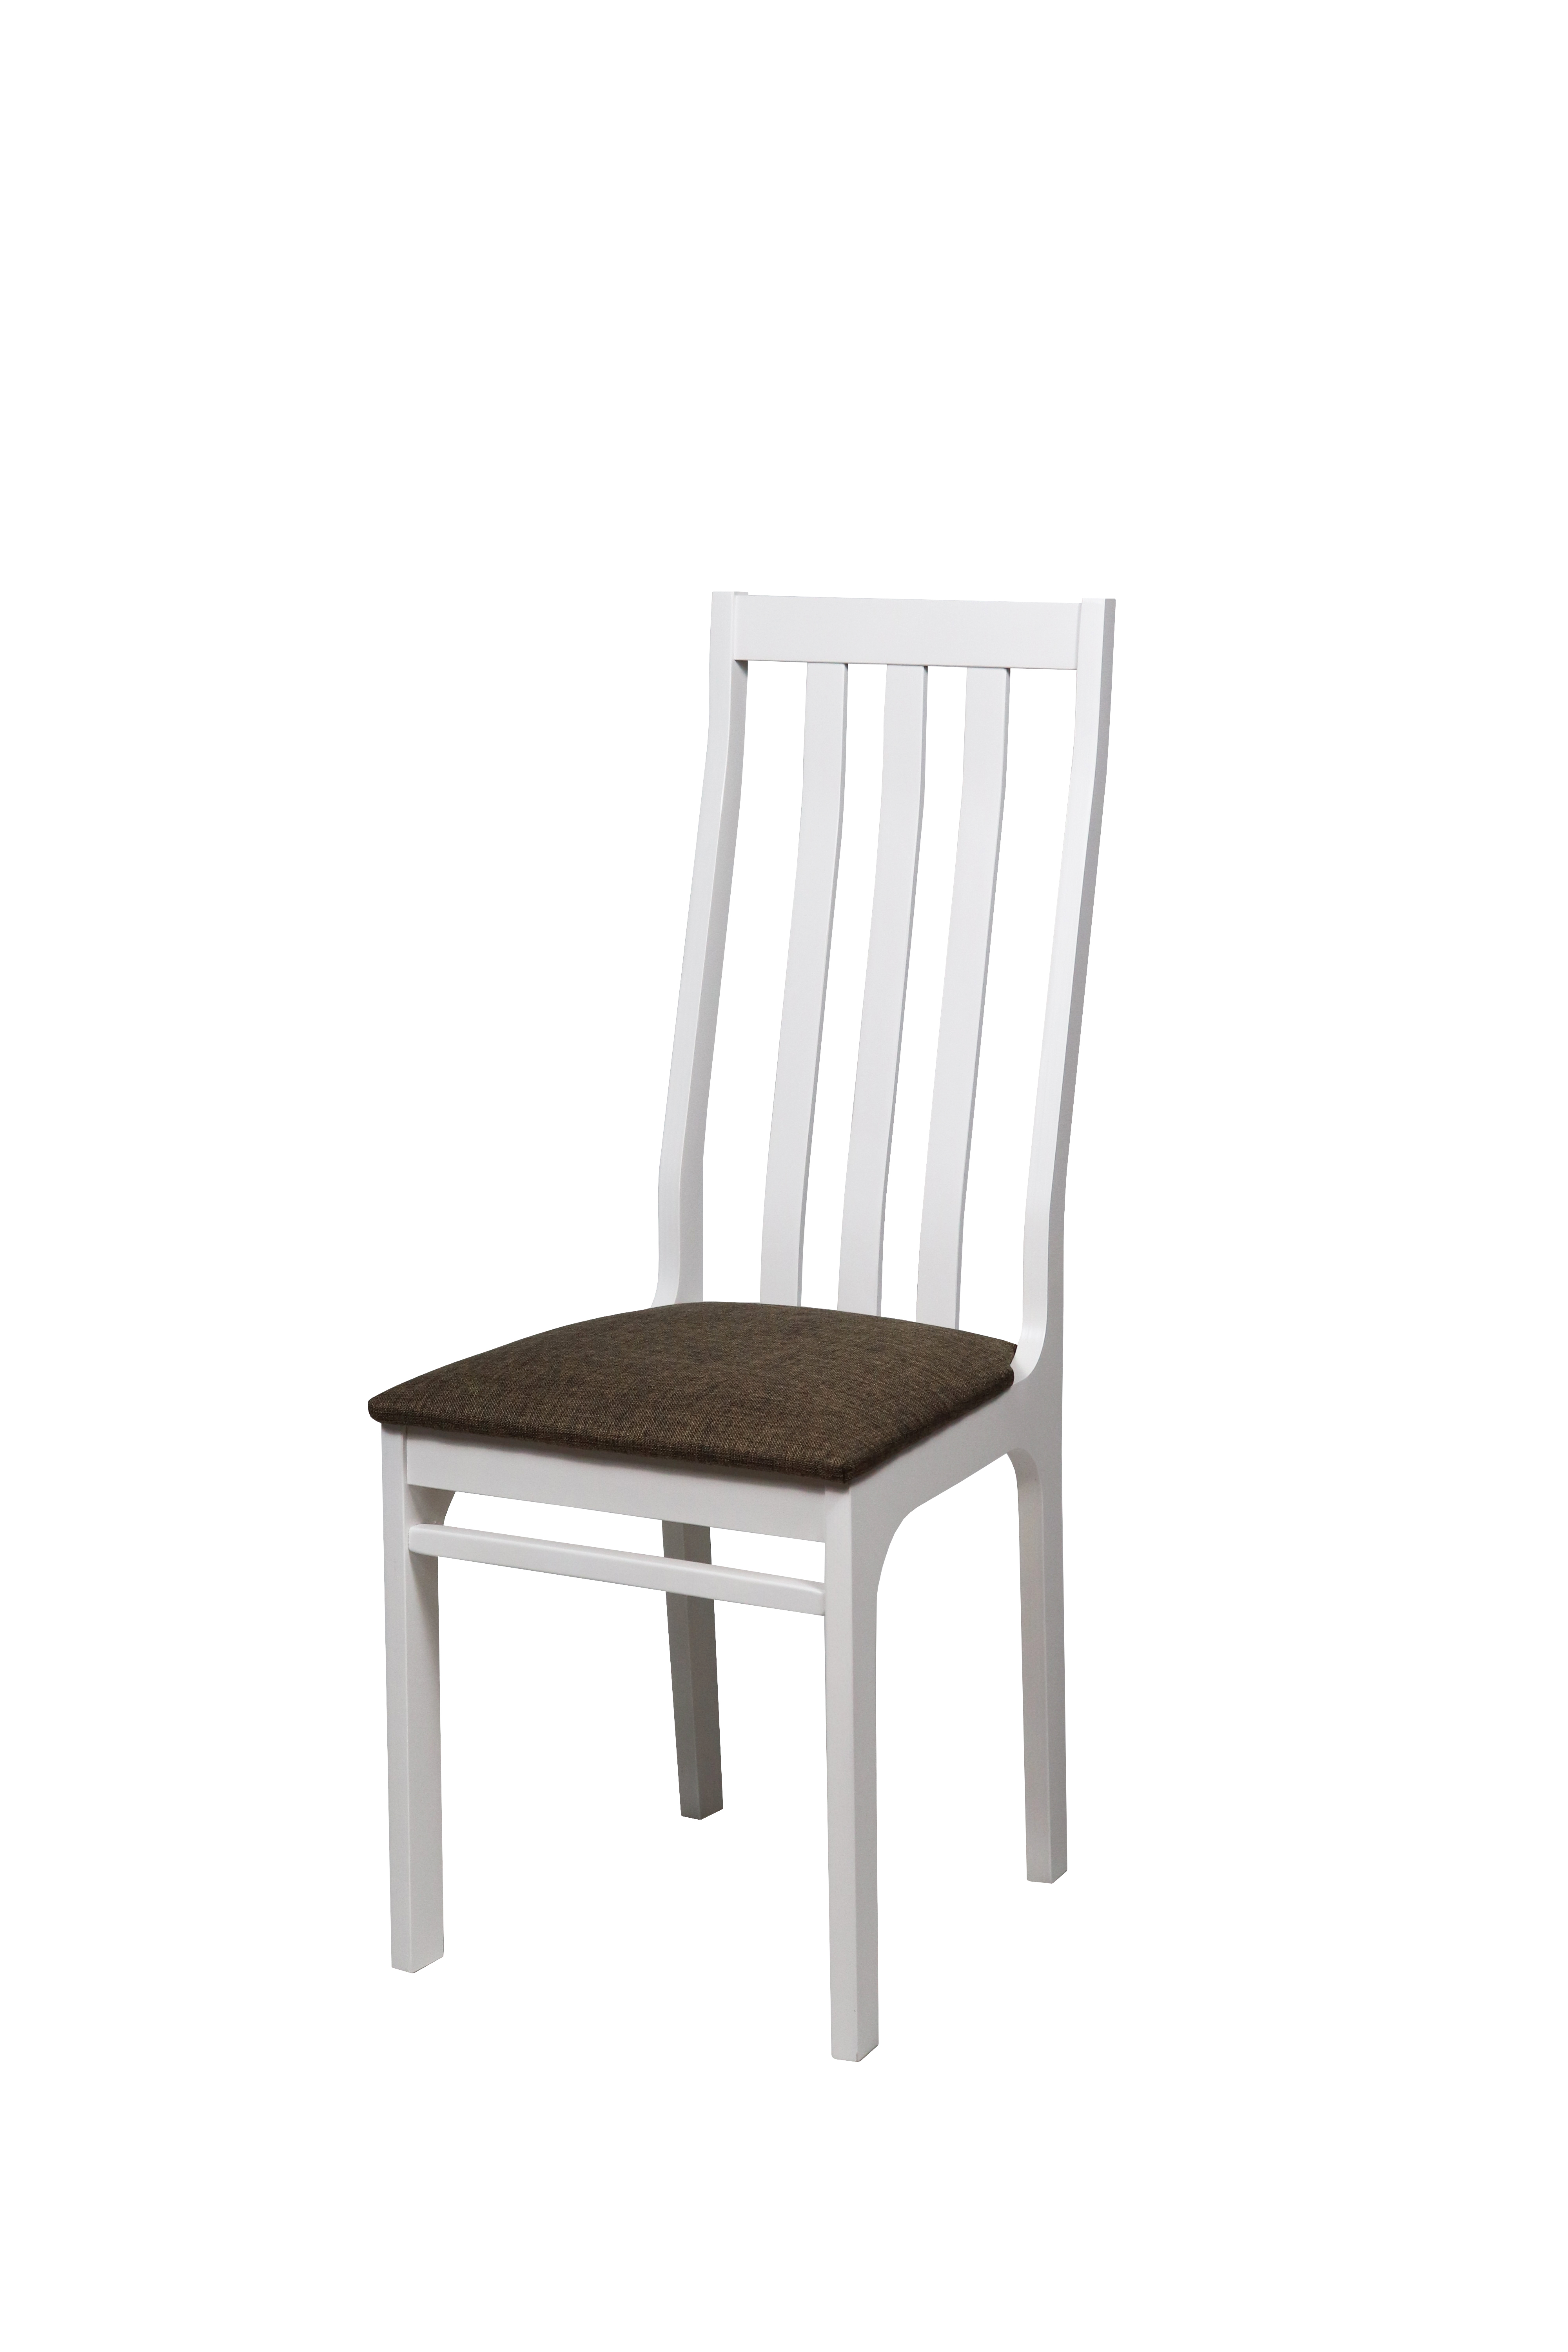 Обеденный стул 36 с мягким сиденьем, деревянный